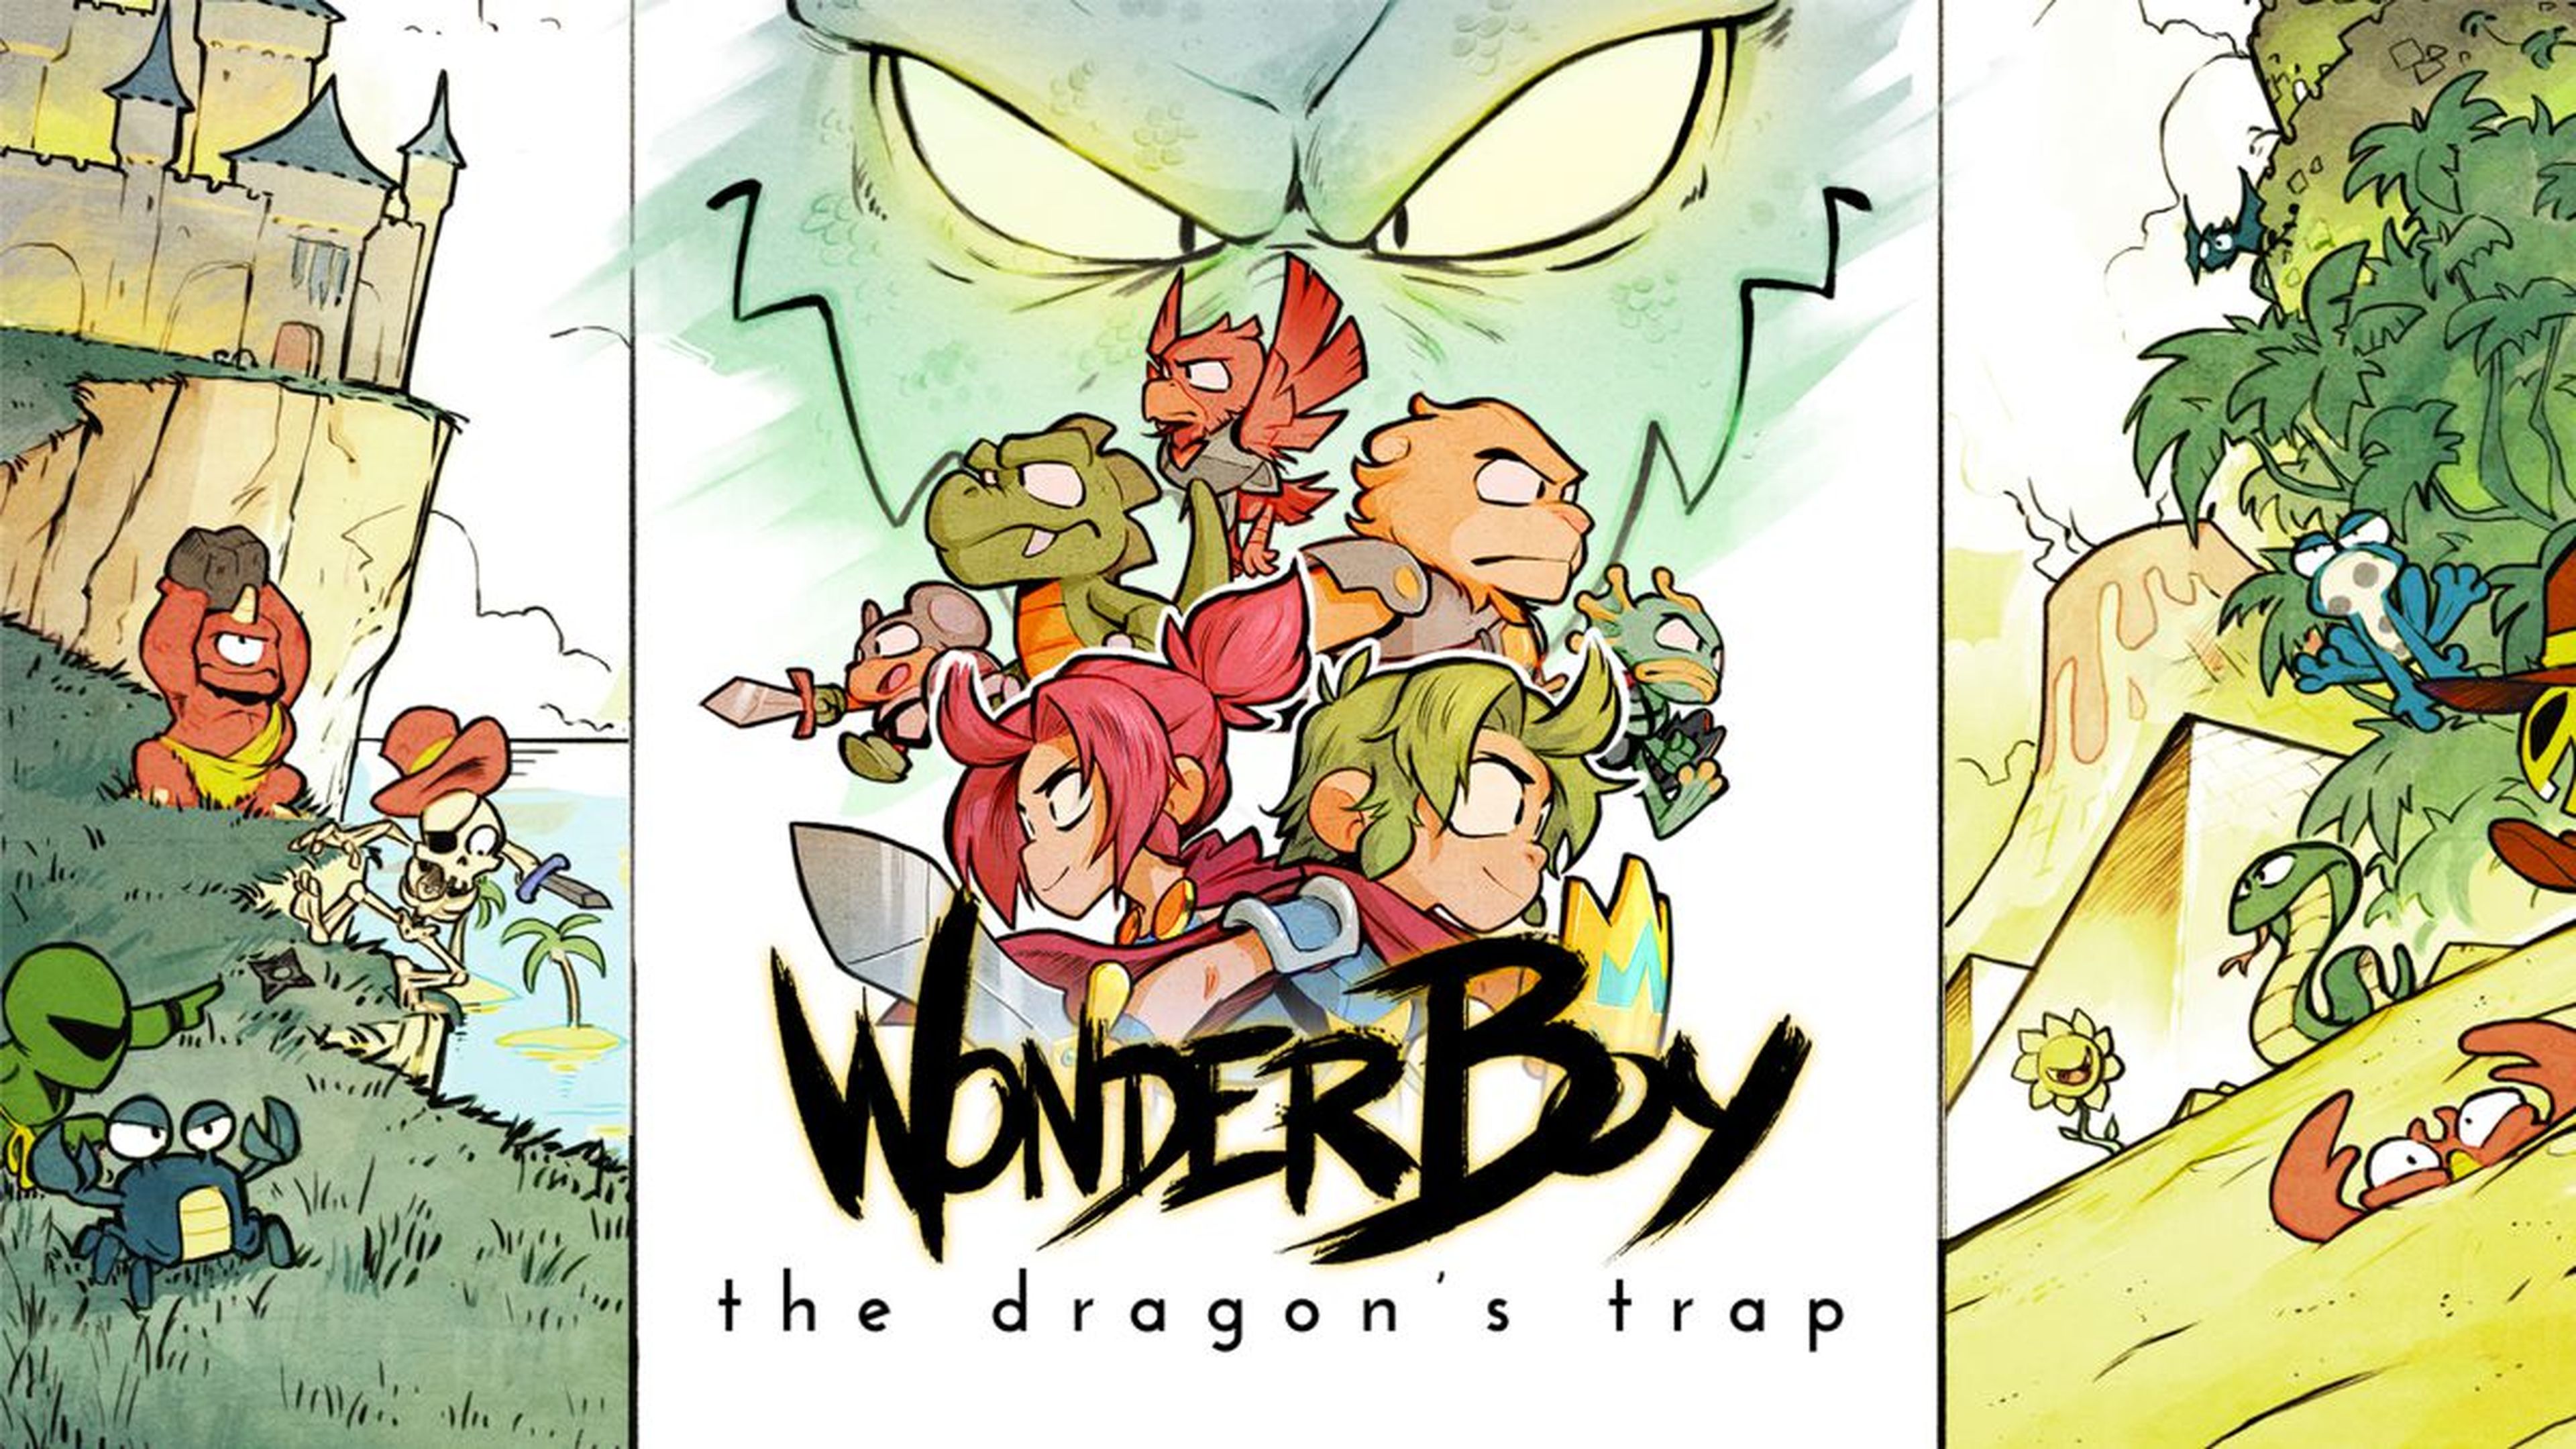 Wonder Boy the dragon's trap